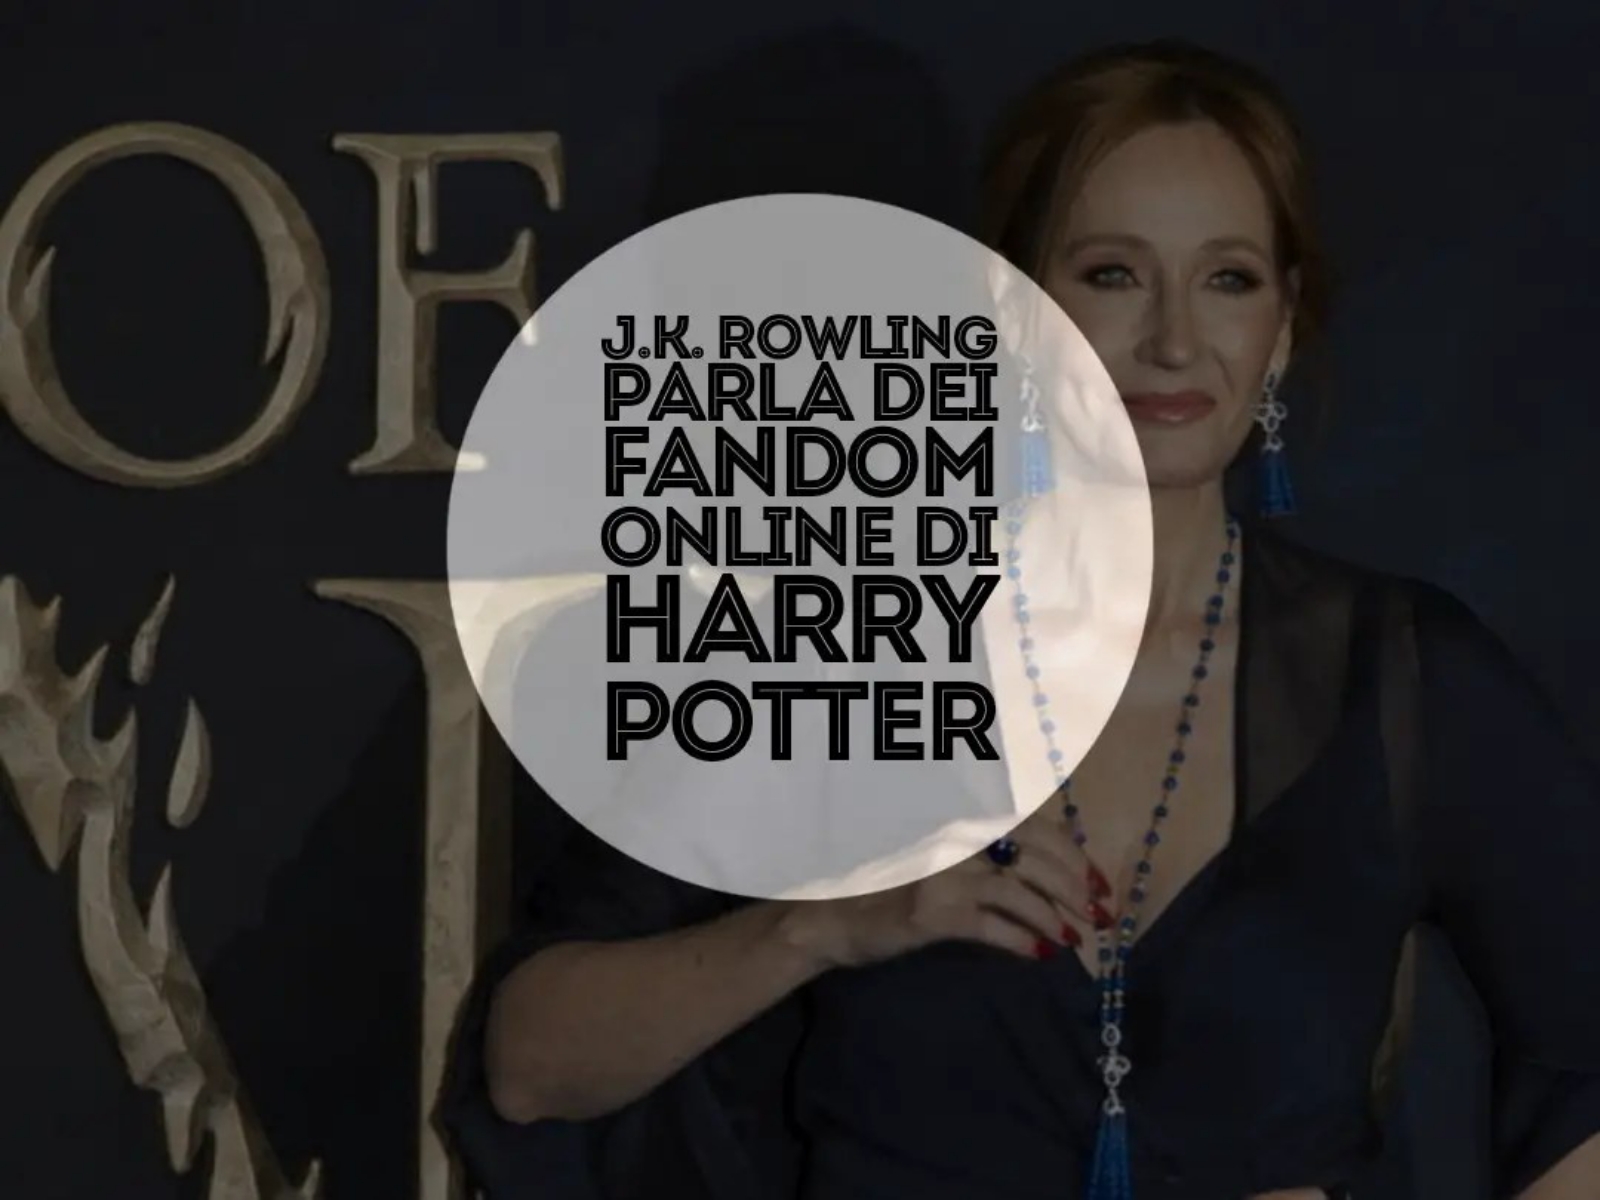 J.K. Rowling parla dei fandom online di harry potter